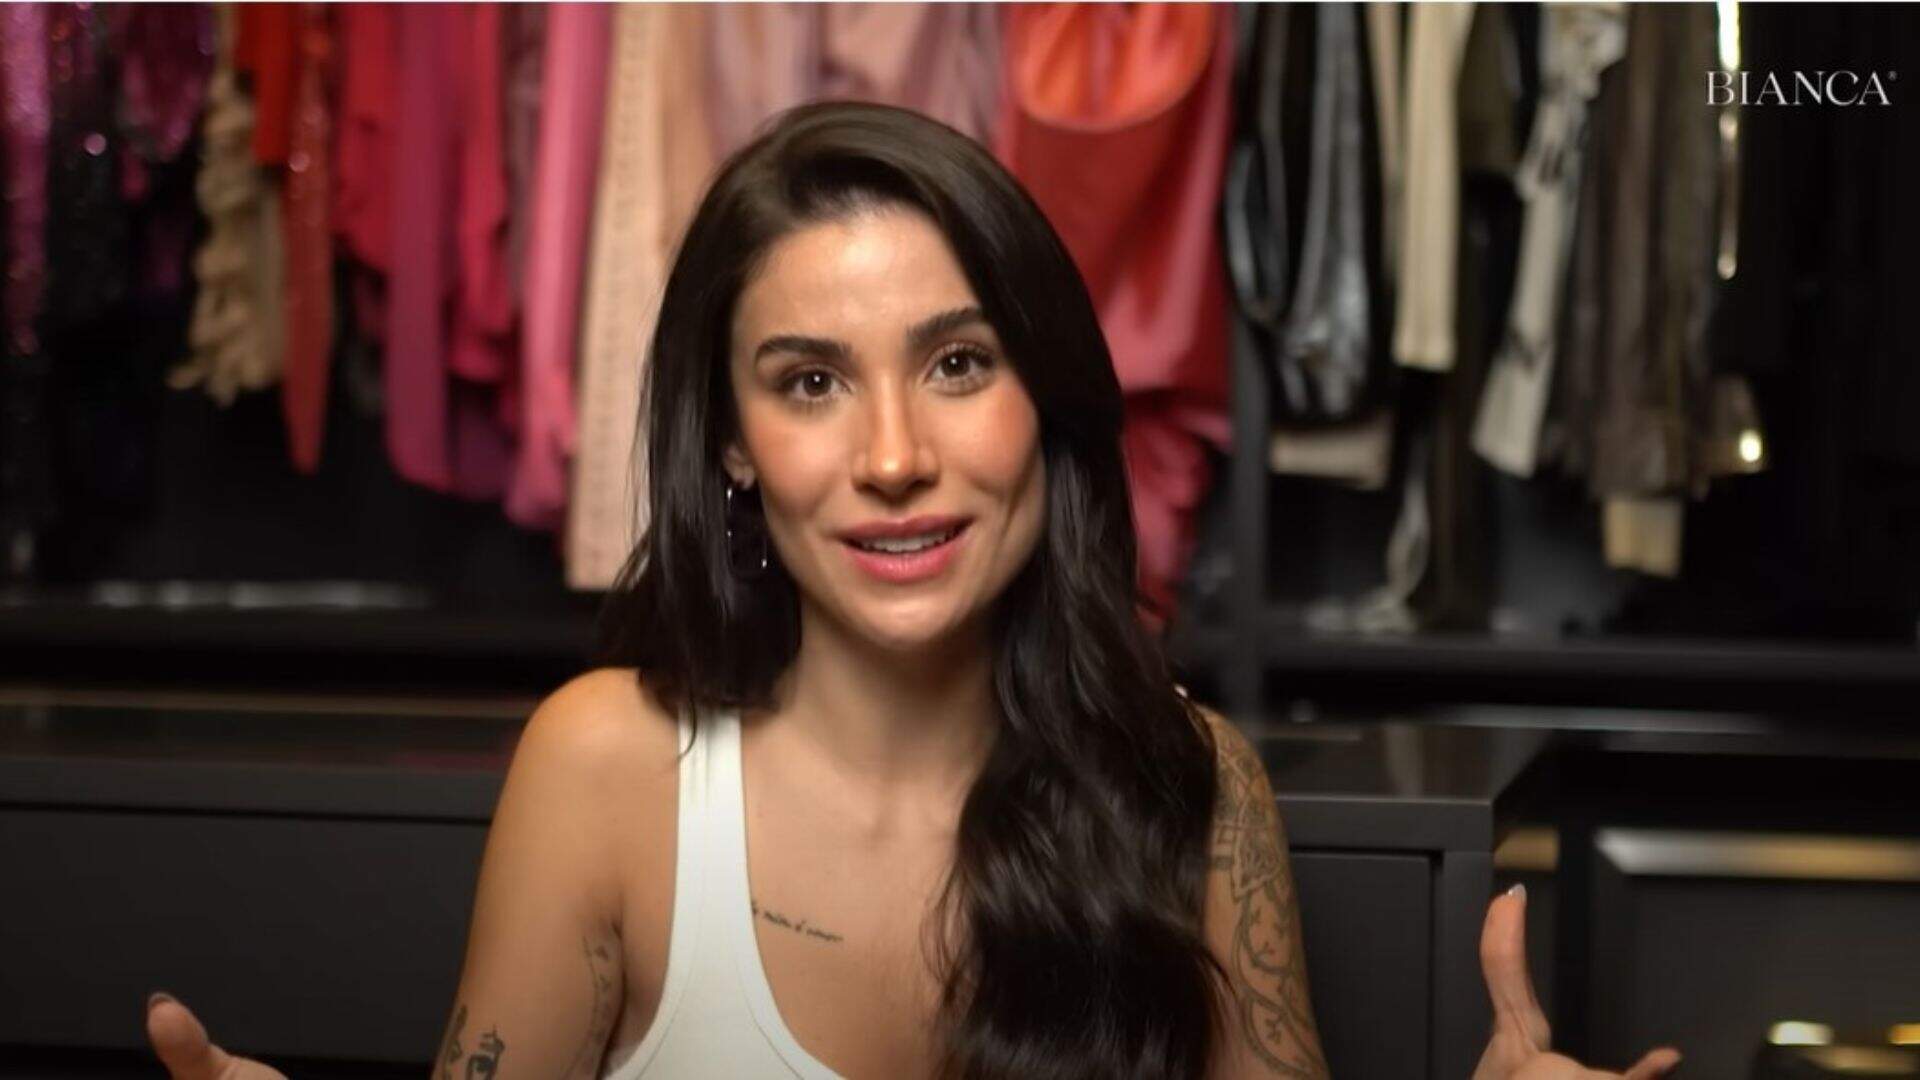 Após mudar para sua nova mansão, Bianca Andrade surpreende ao doar 70% de suas roupas: “Minimalista” - Metropolitana FM